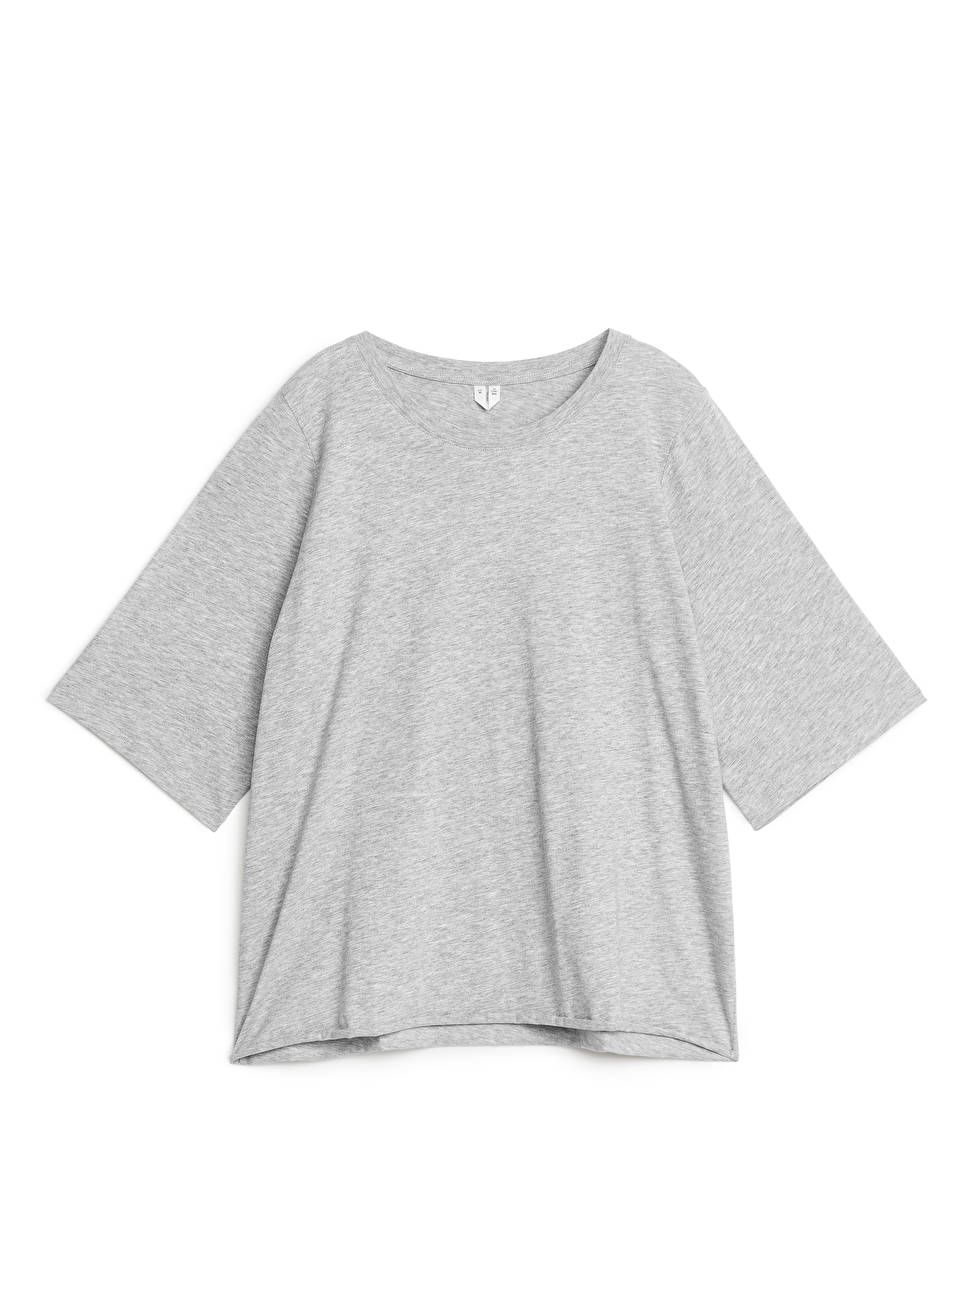 Drapy Cotton T-Shirt | ARKET (US&UK)